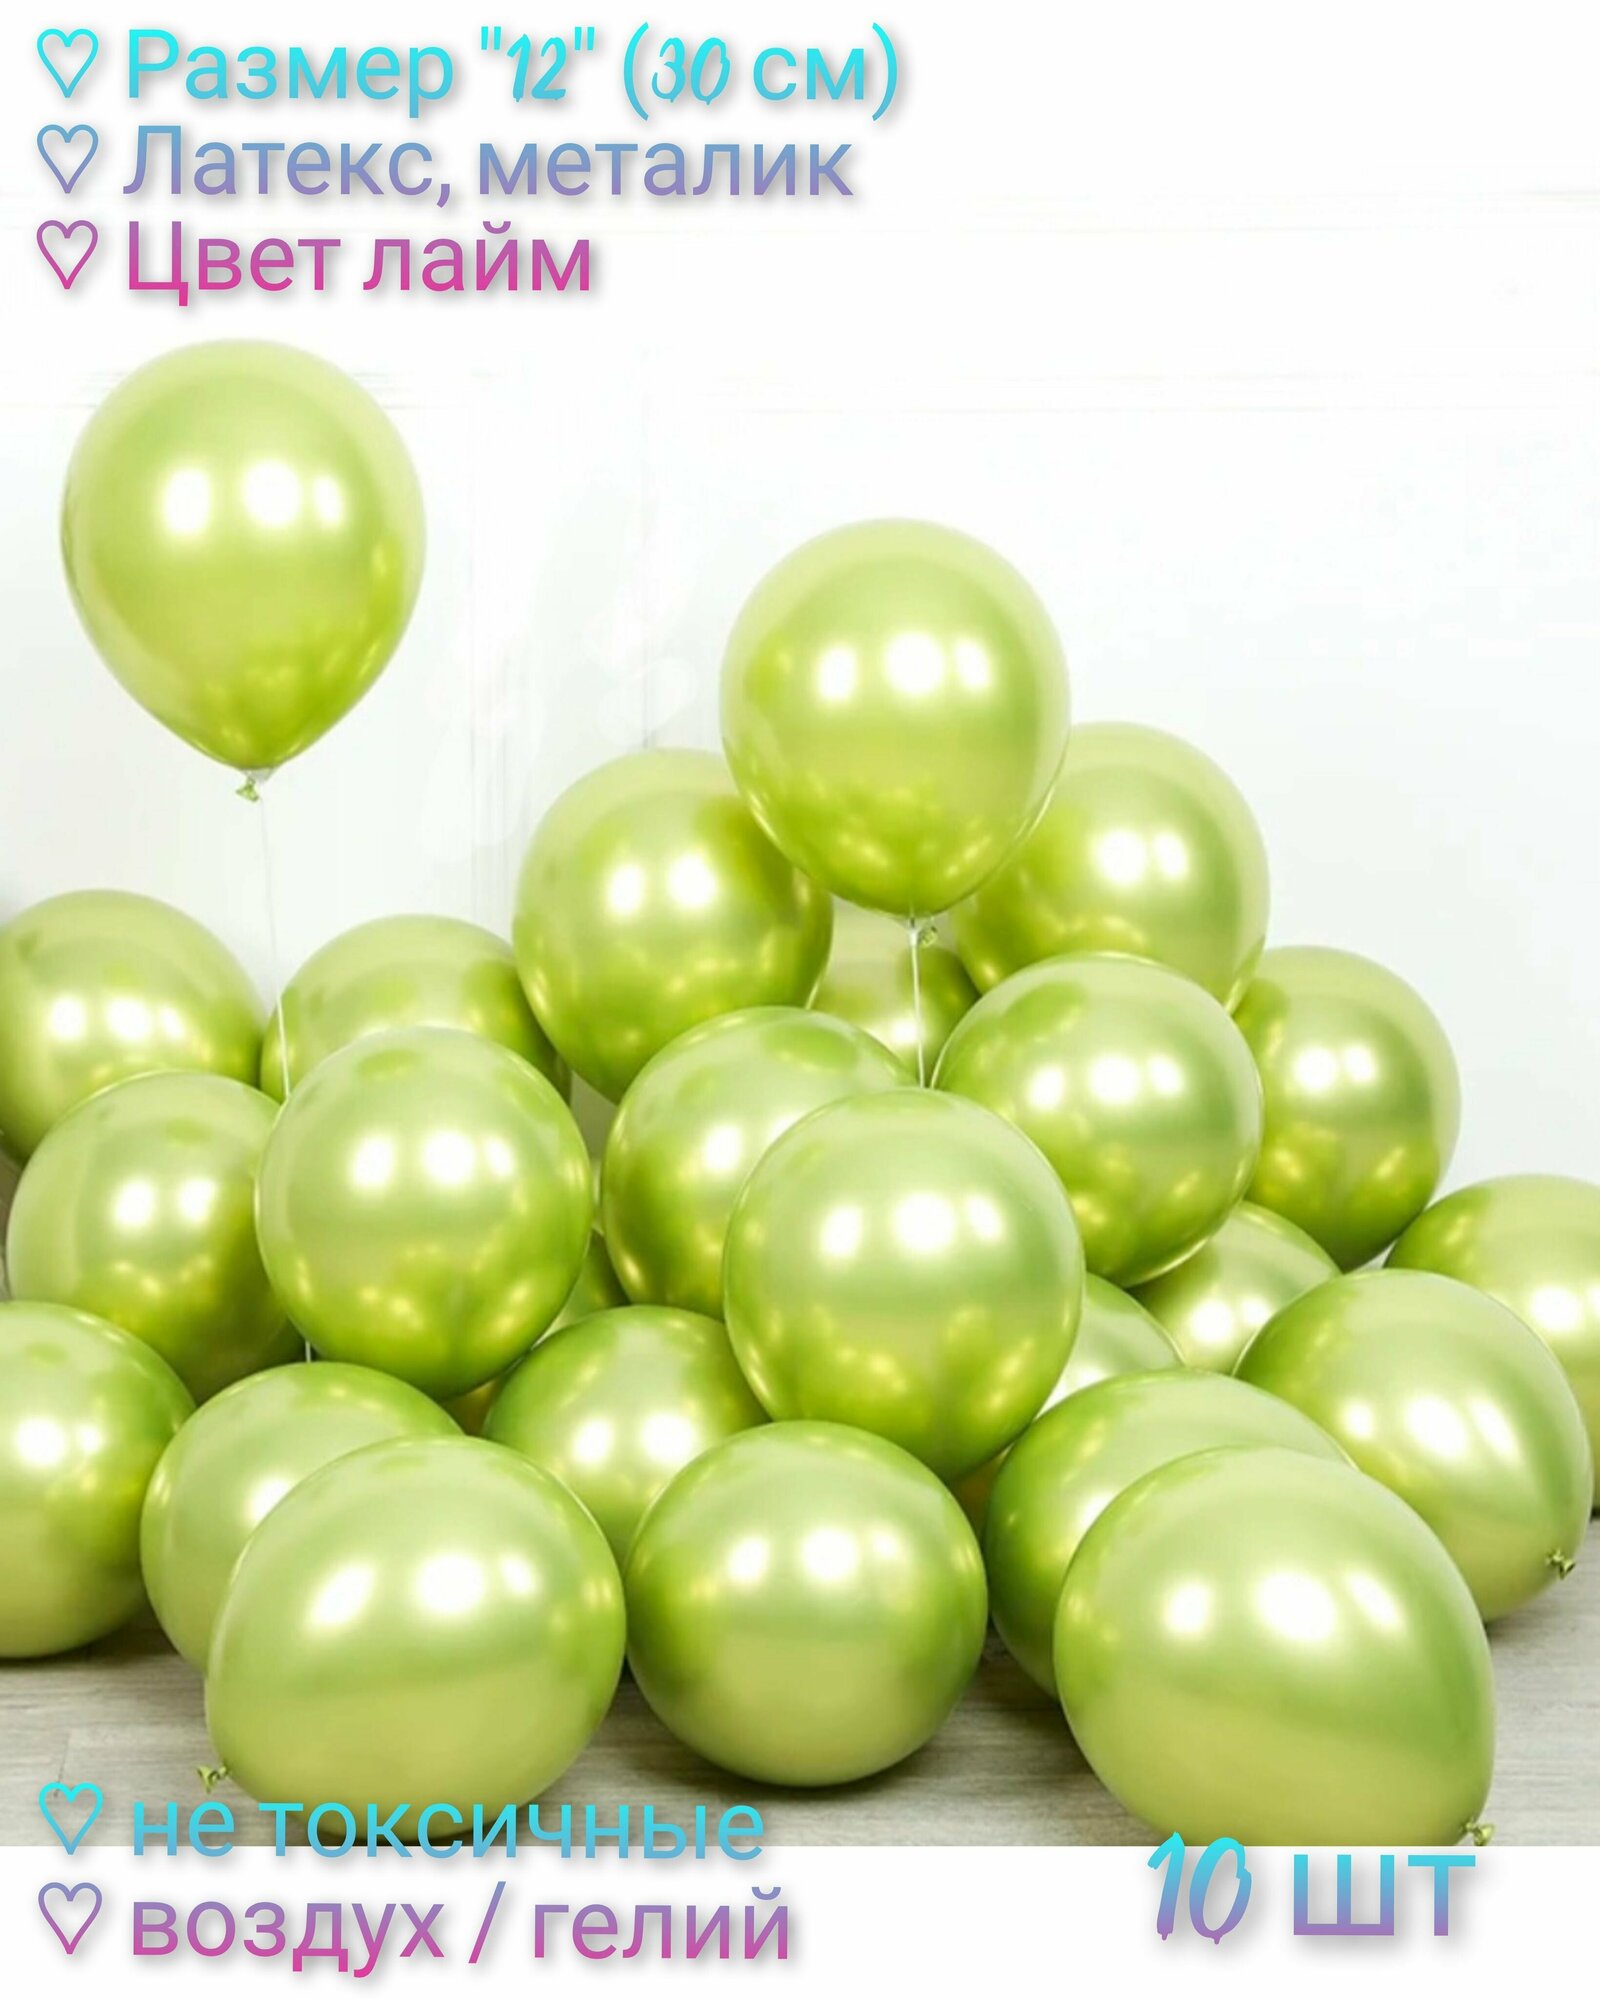 Набор Воздушных шаров "12" (30 см) - 10 шт, латекс, металлик. Цвет лайм.